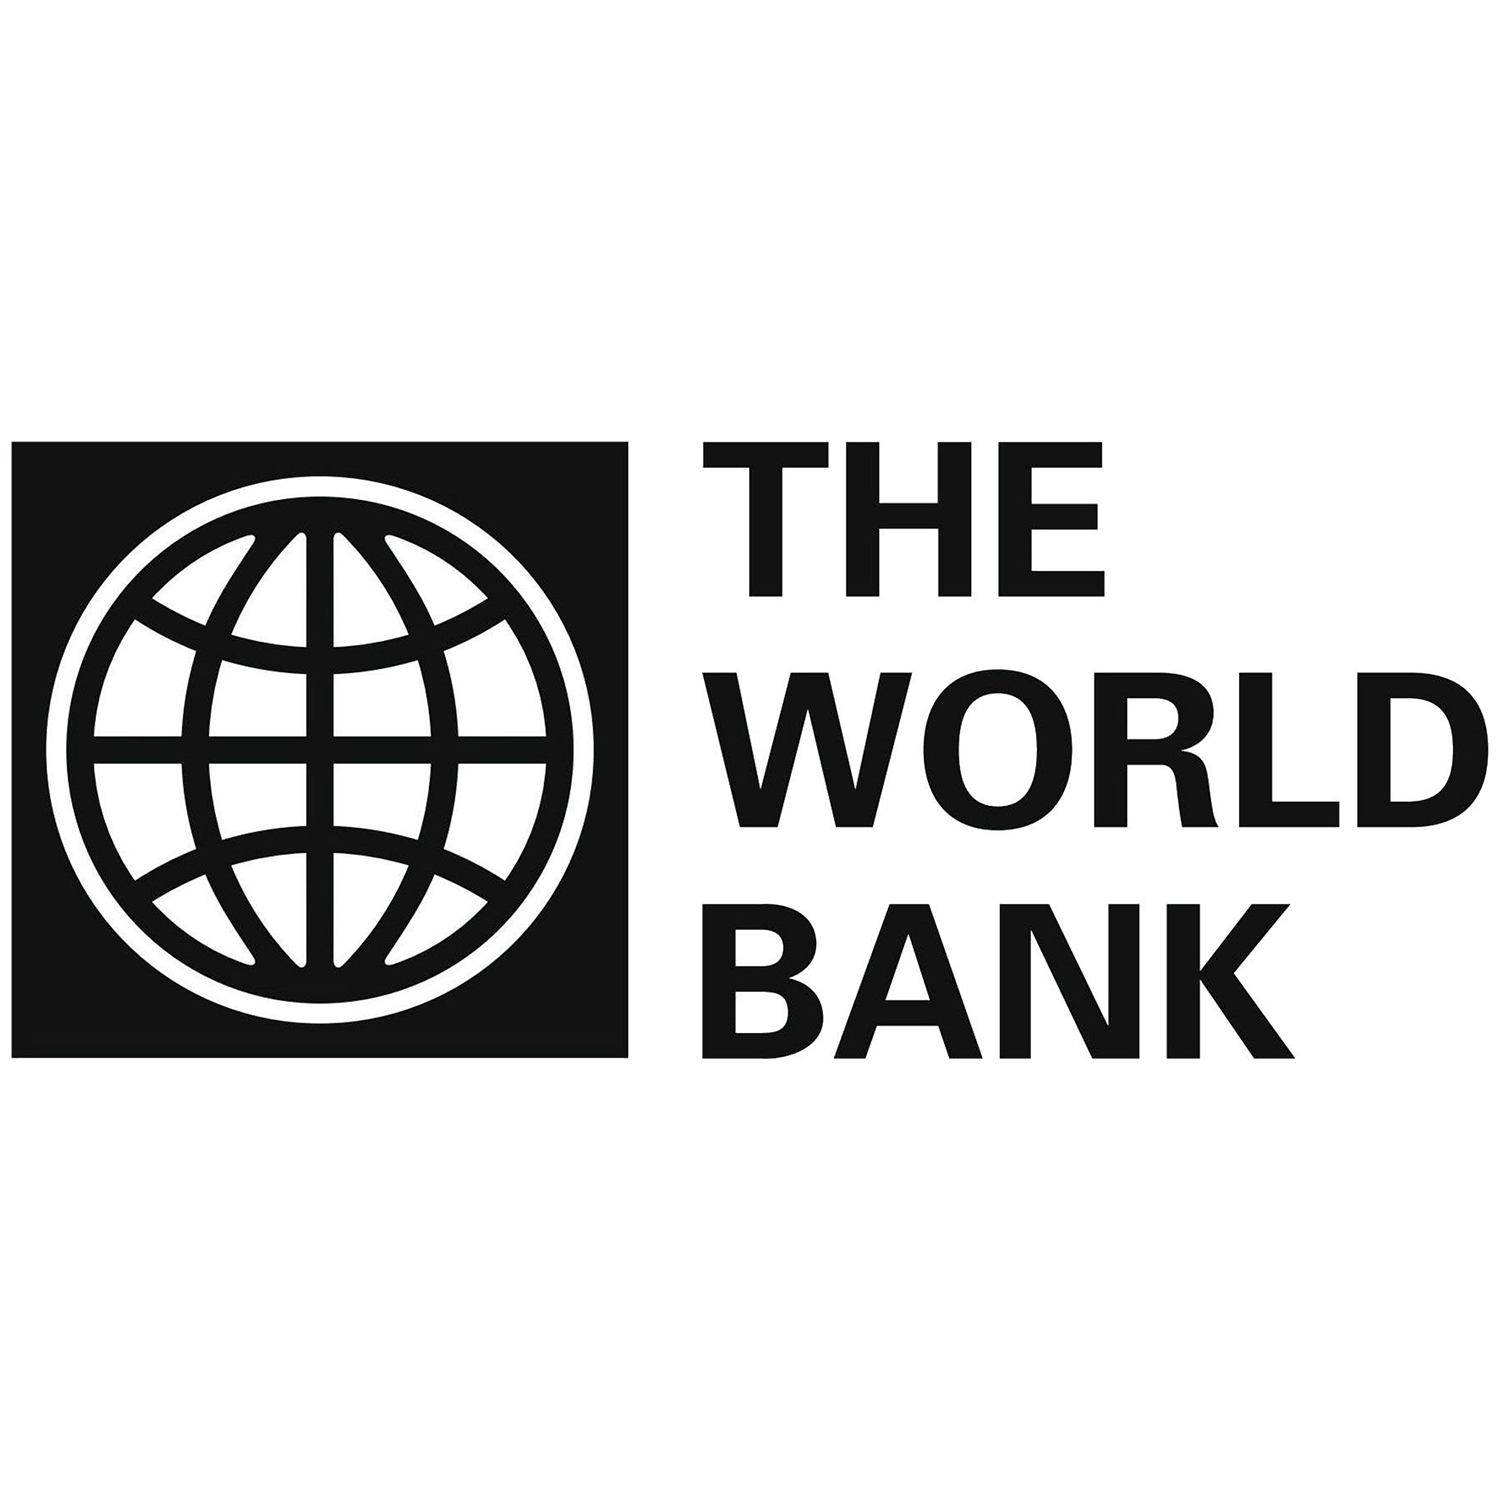 Всемирный банк деятельность. Всемирный банк. Всемирного банка (the World Bank). Всемирный банк США. Всемирный банк логотип.